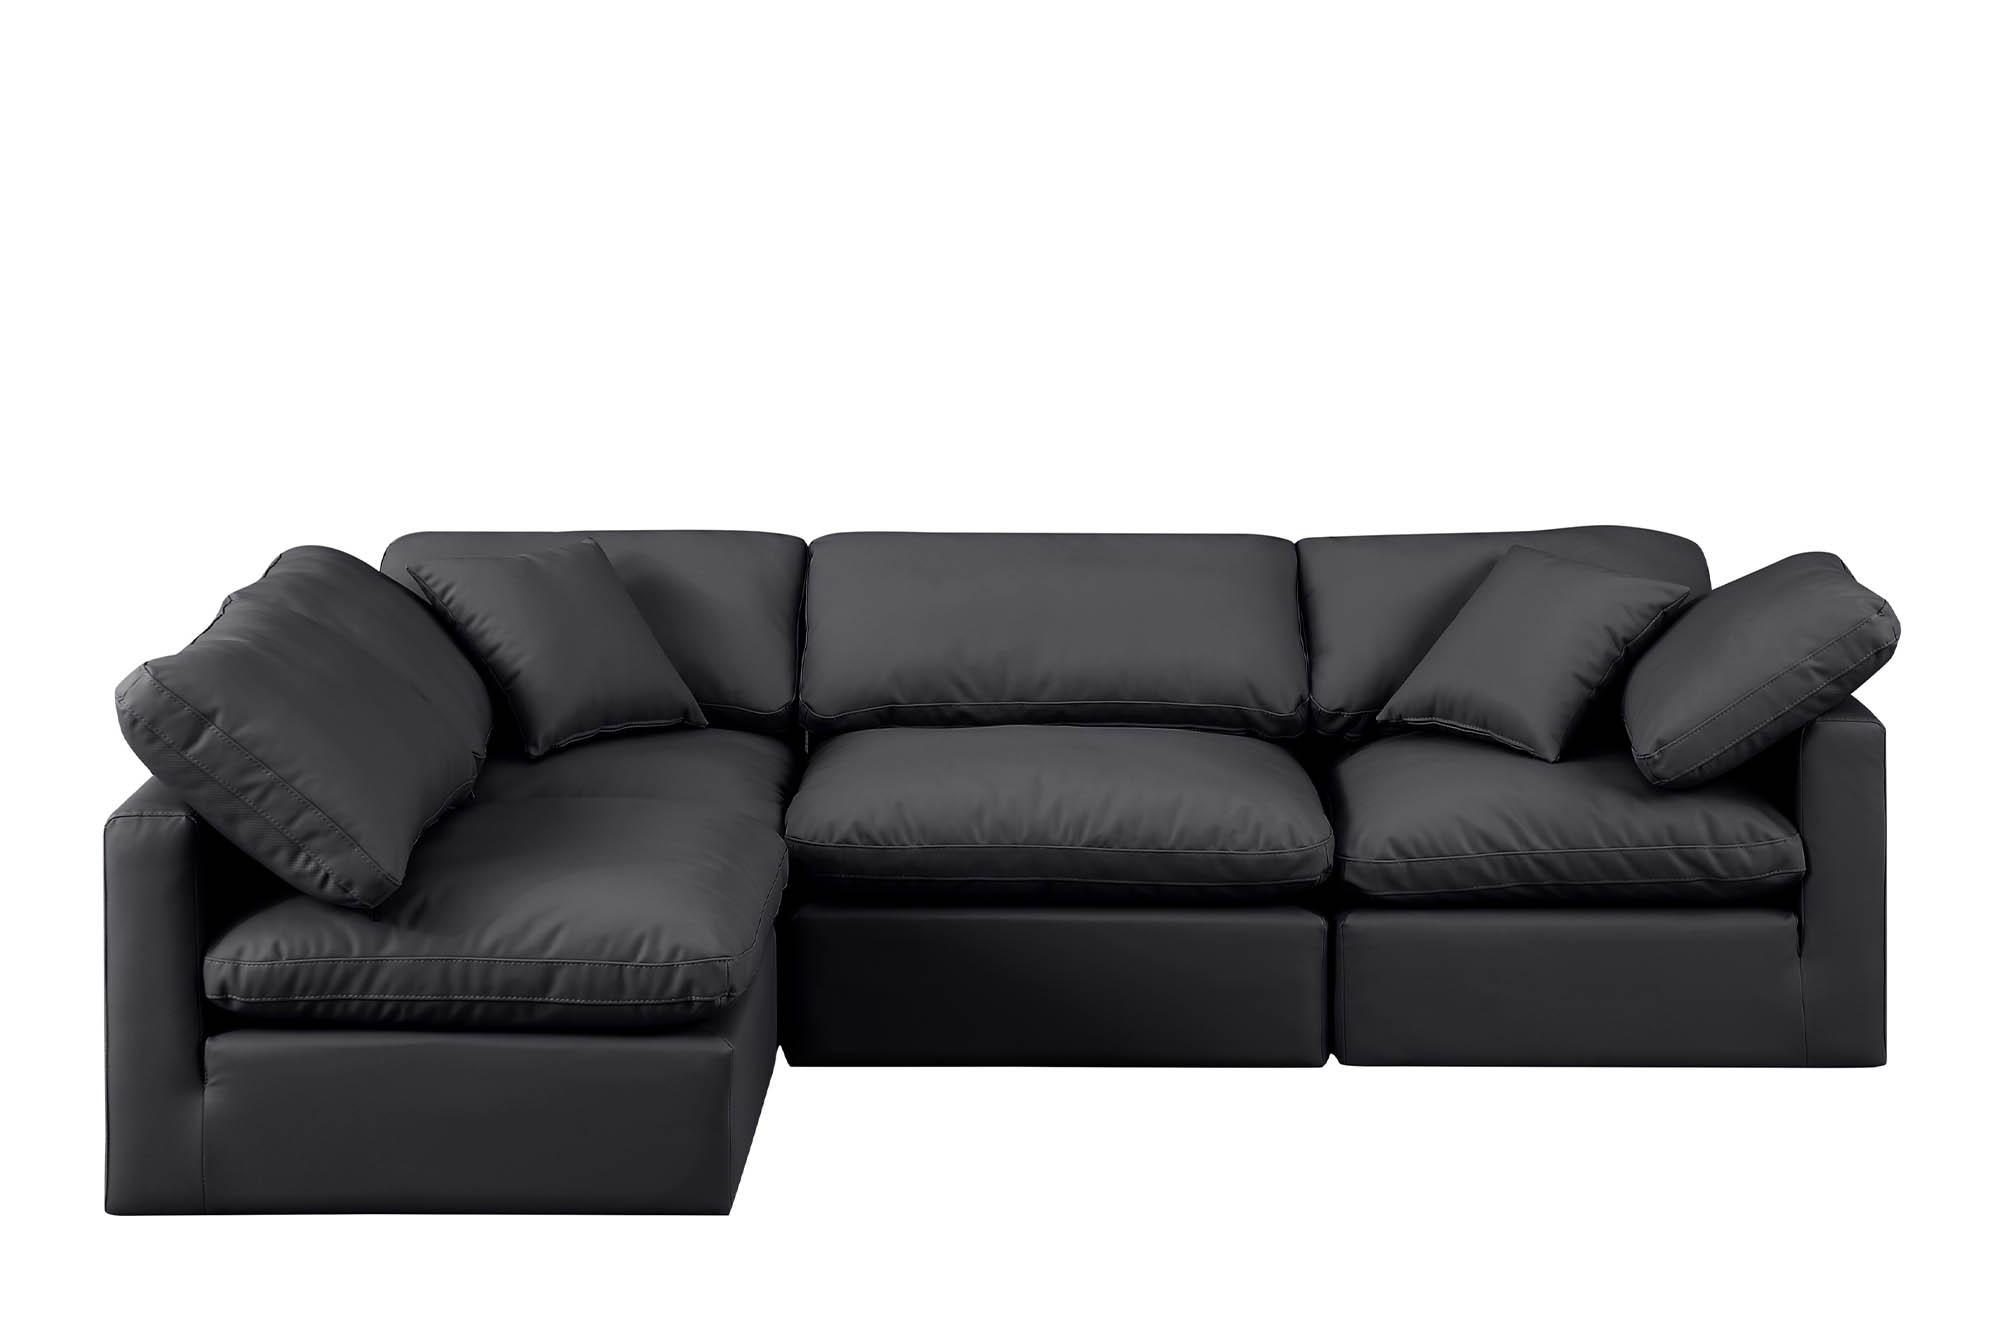 

    
Meridian Furniture INDULGE 146Black-Sec4B Modular Sectional Sofa Black 146Black-Sec4B
